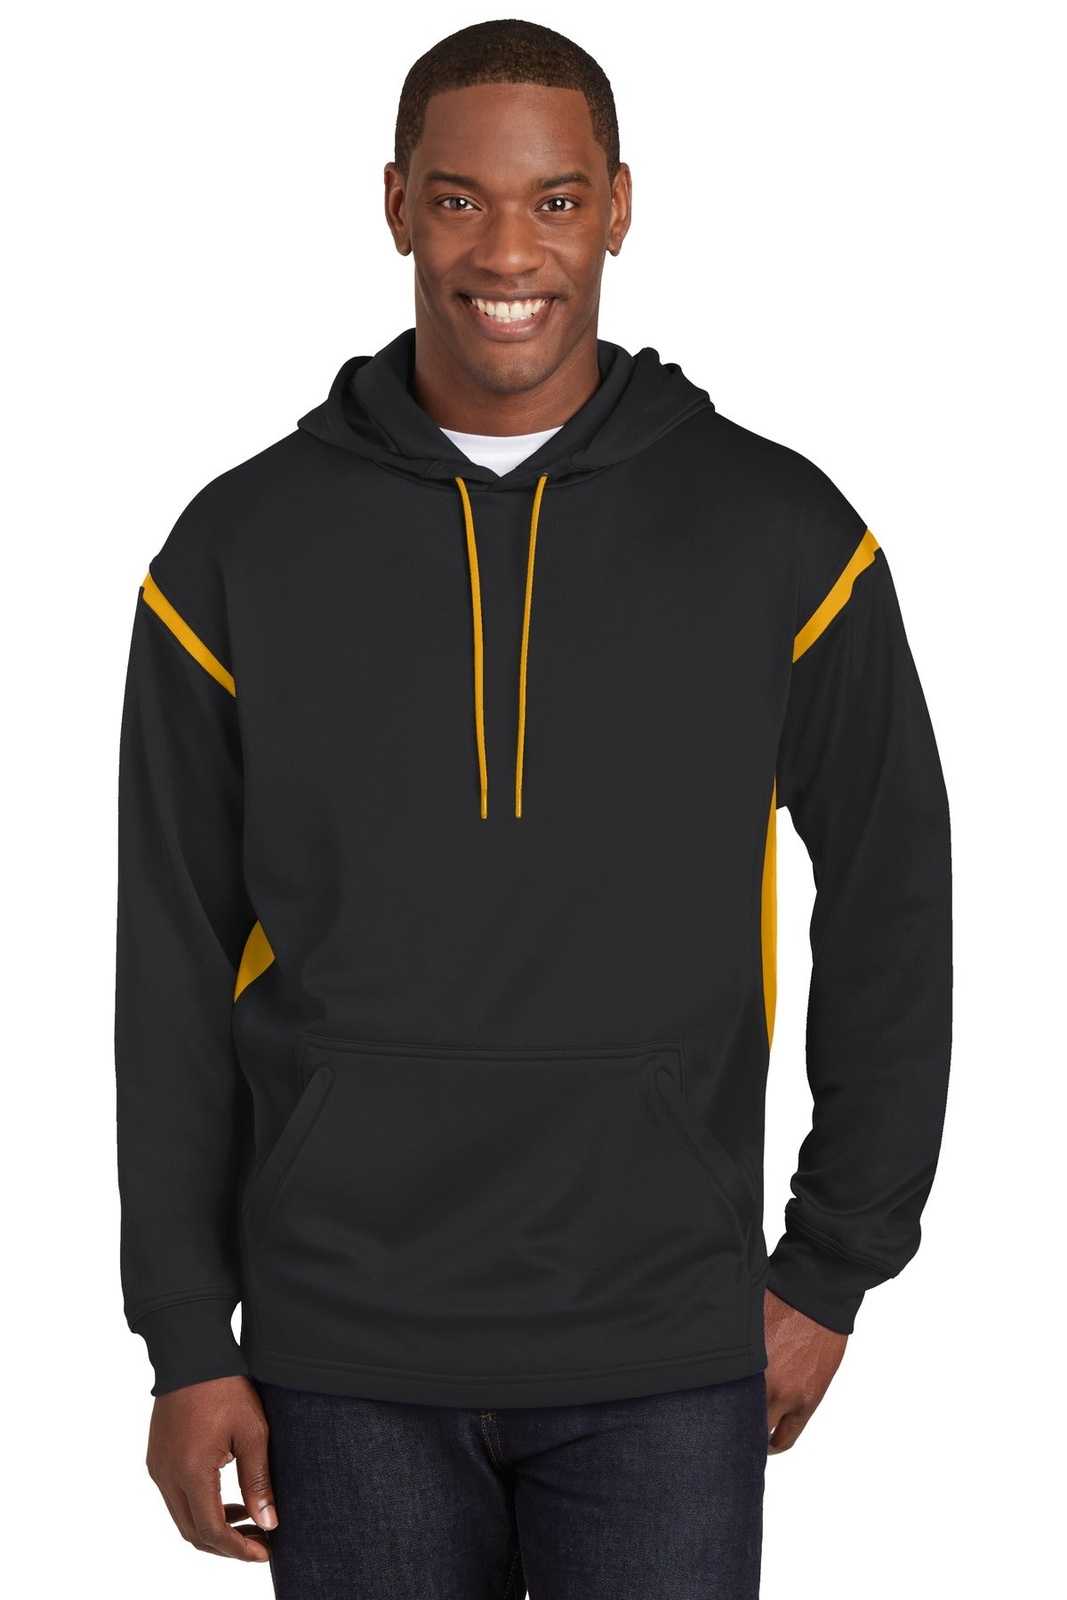 Sport-Tek F246 Tech Fleece Colorblock Hooded Sweatshirt - Black Gold - HIT a Double - 1